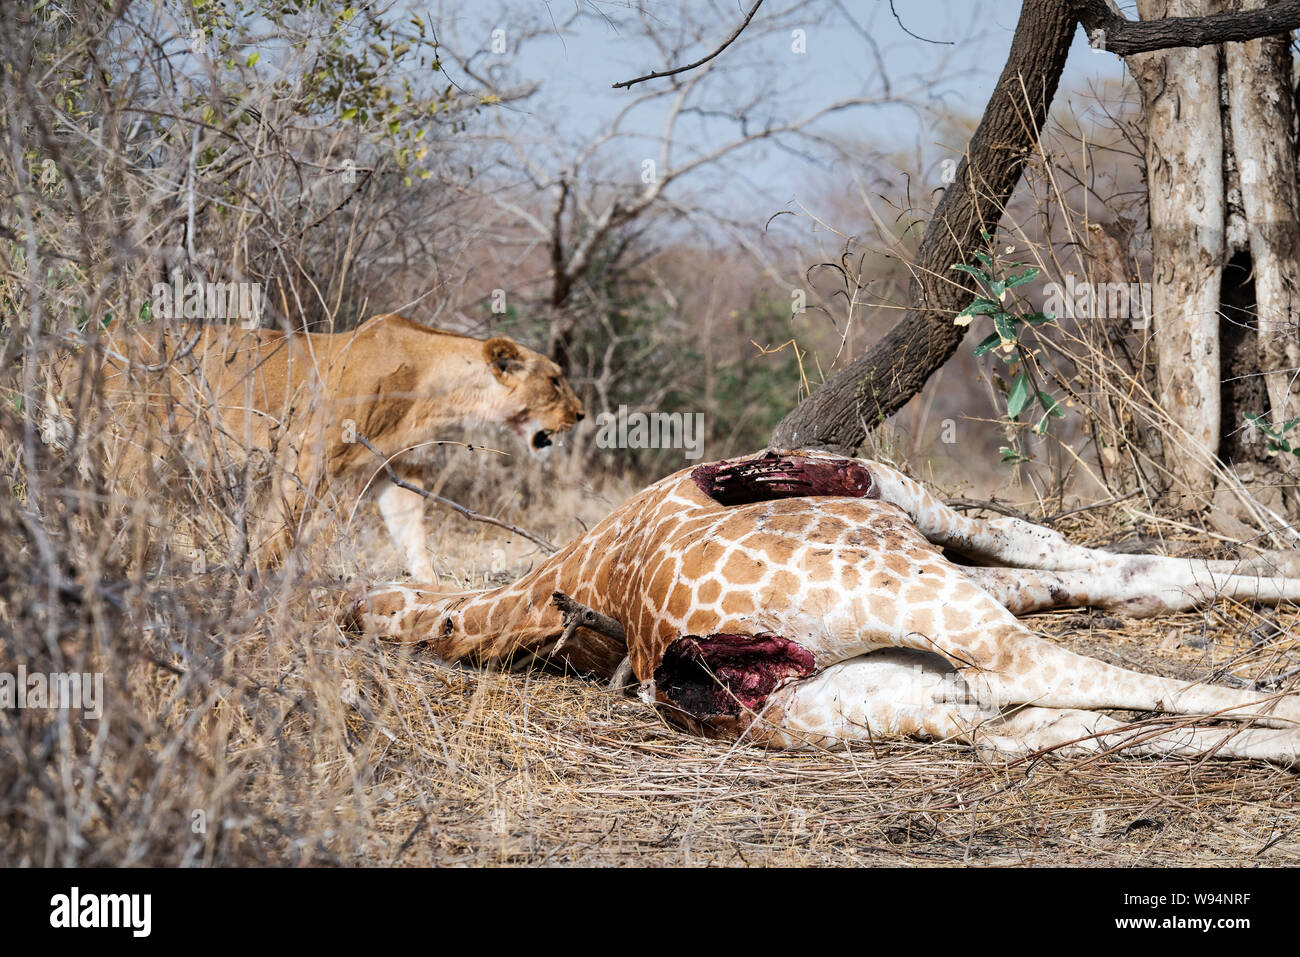 Lion and dead giraffe in Zakouma, Chad Stock Photo